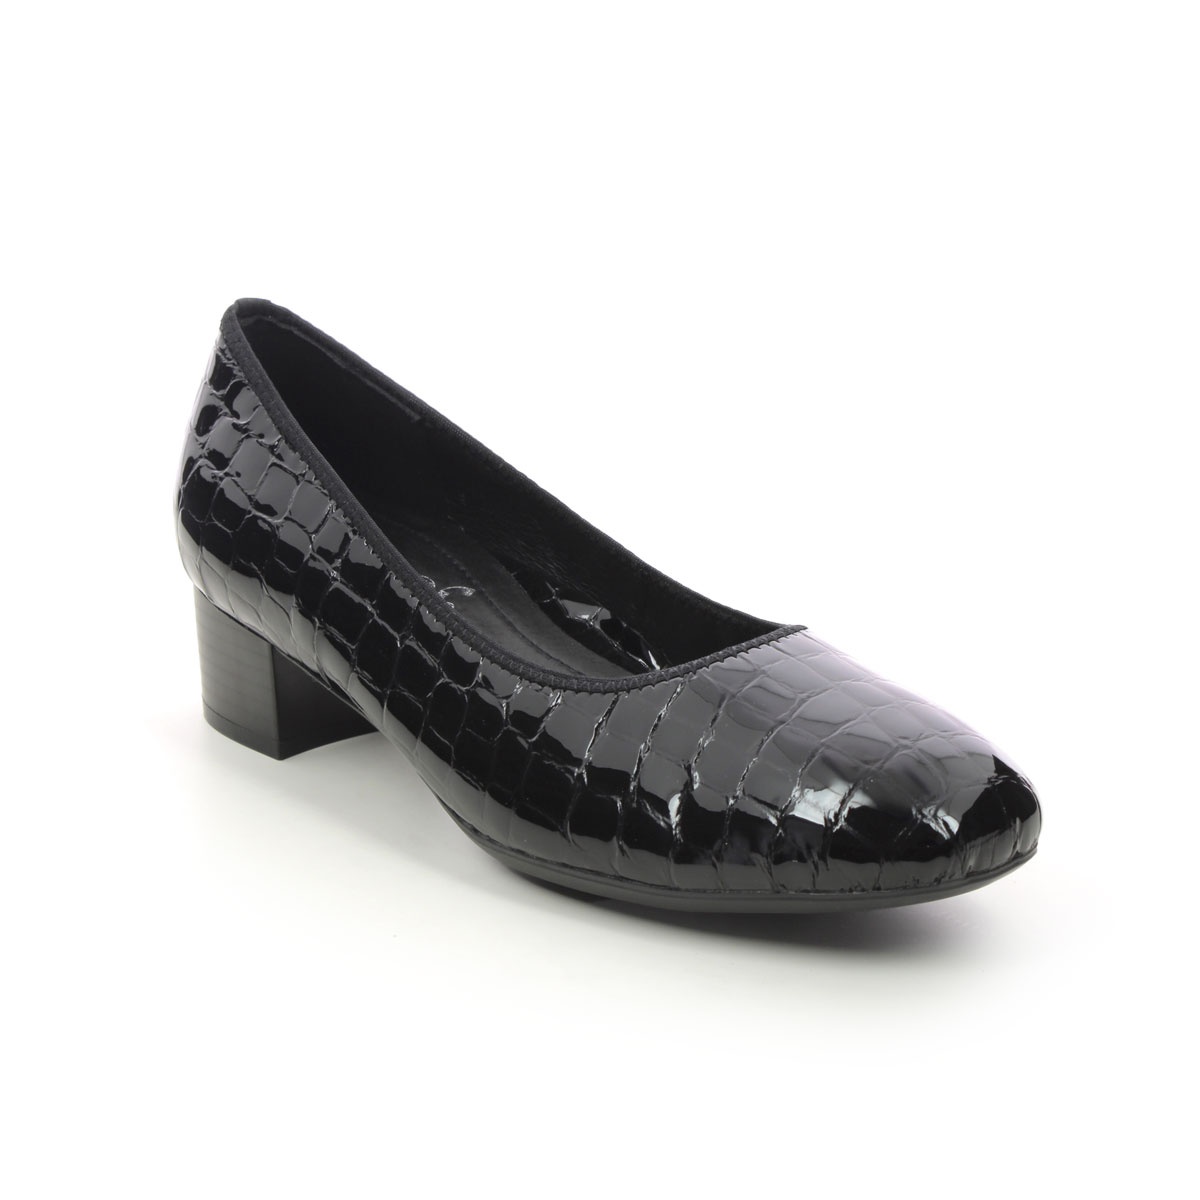 Rieker Develop Graco Black Croc Womens Court Shoes 49260-02 In Size 37 In Plain Black Croc Effect